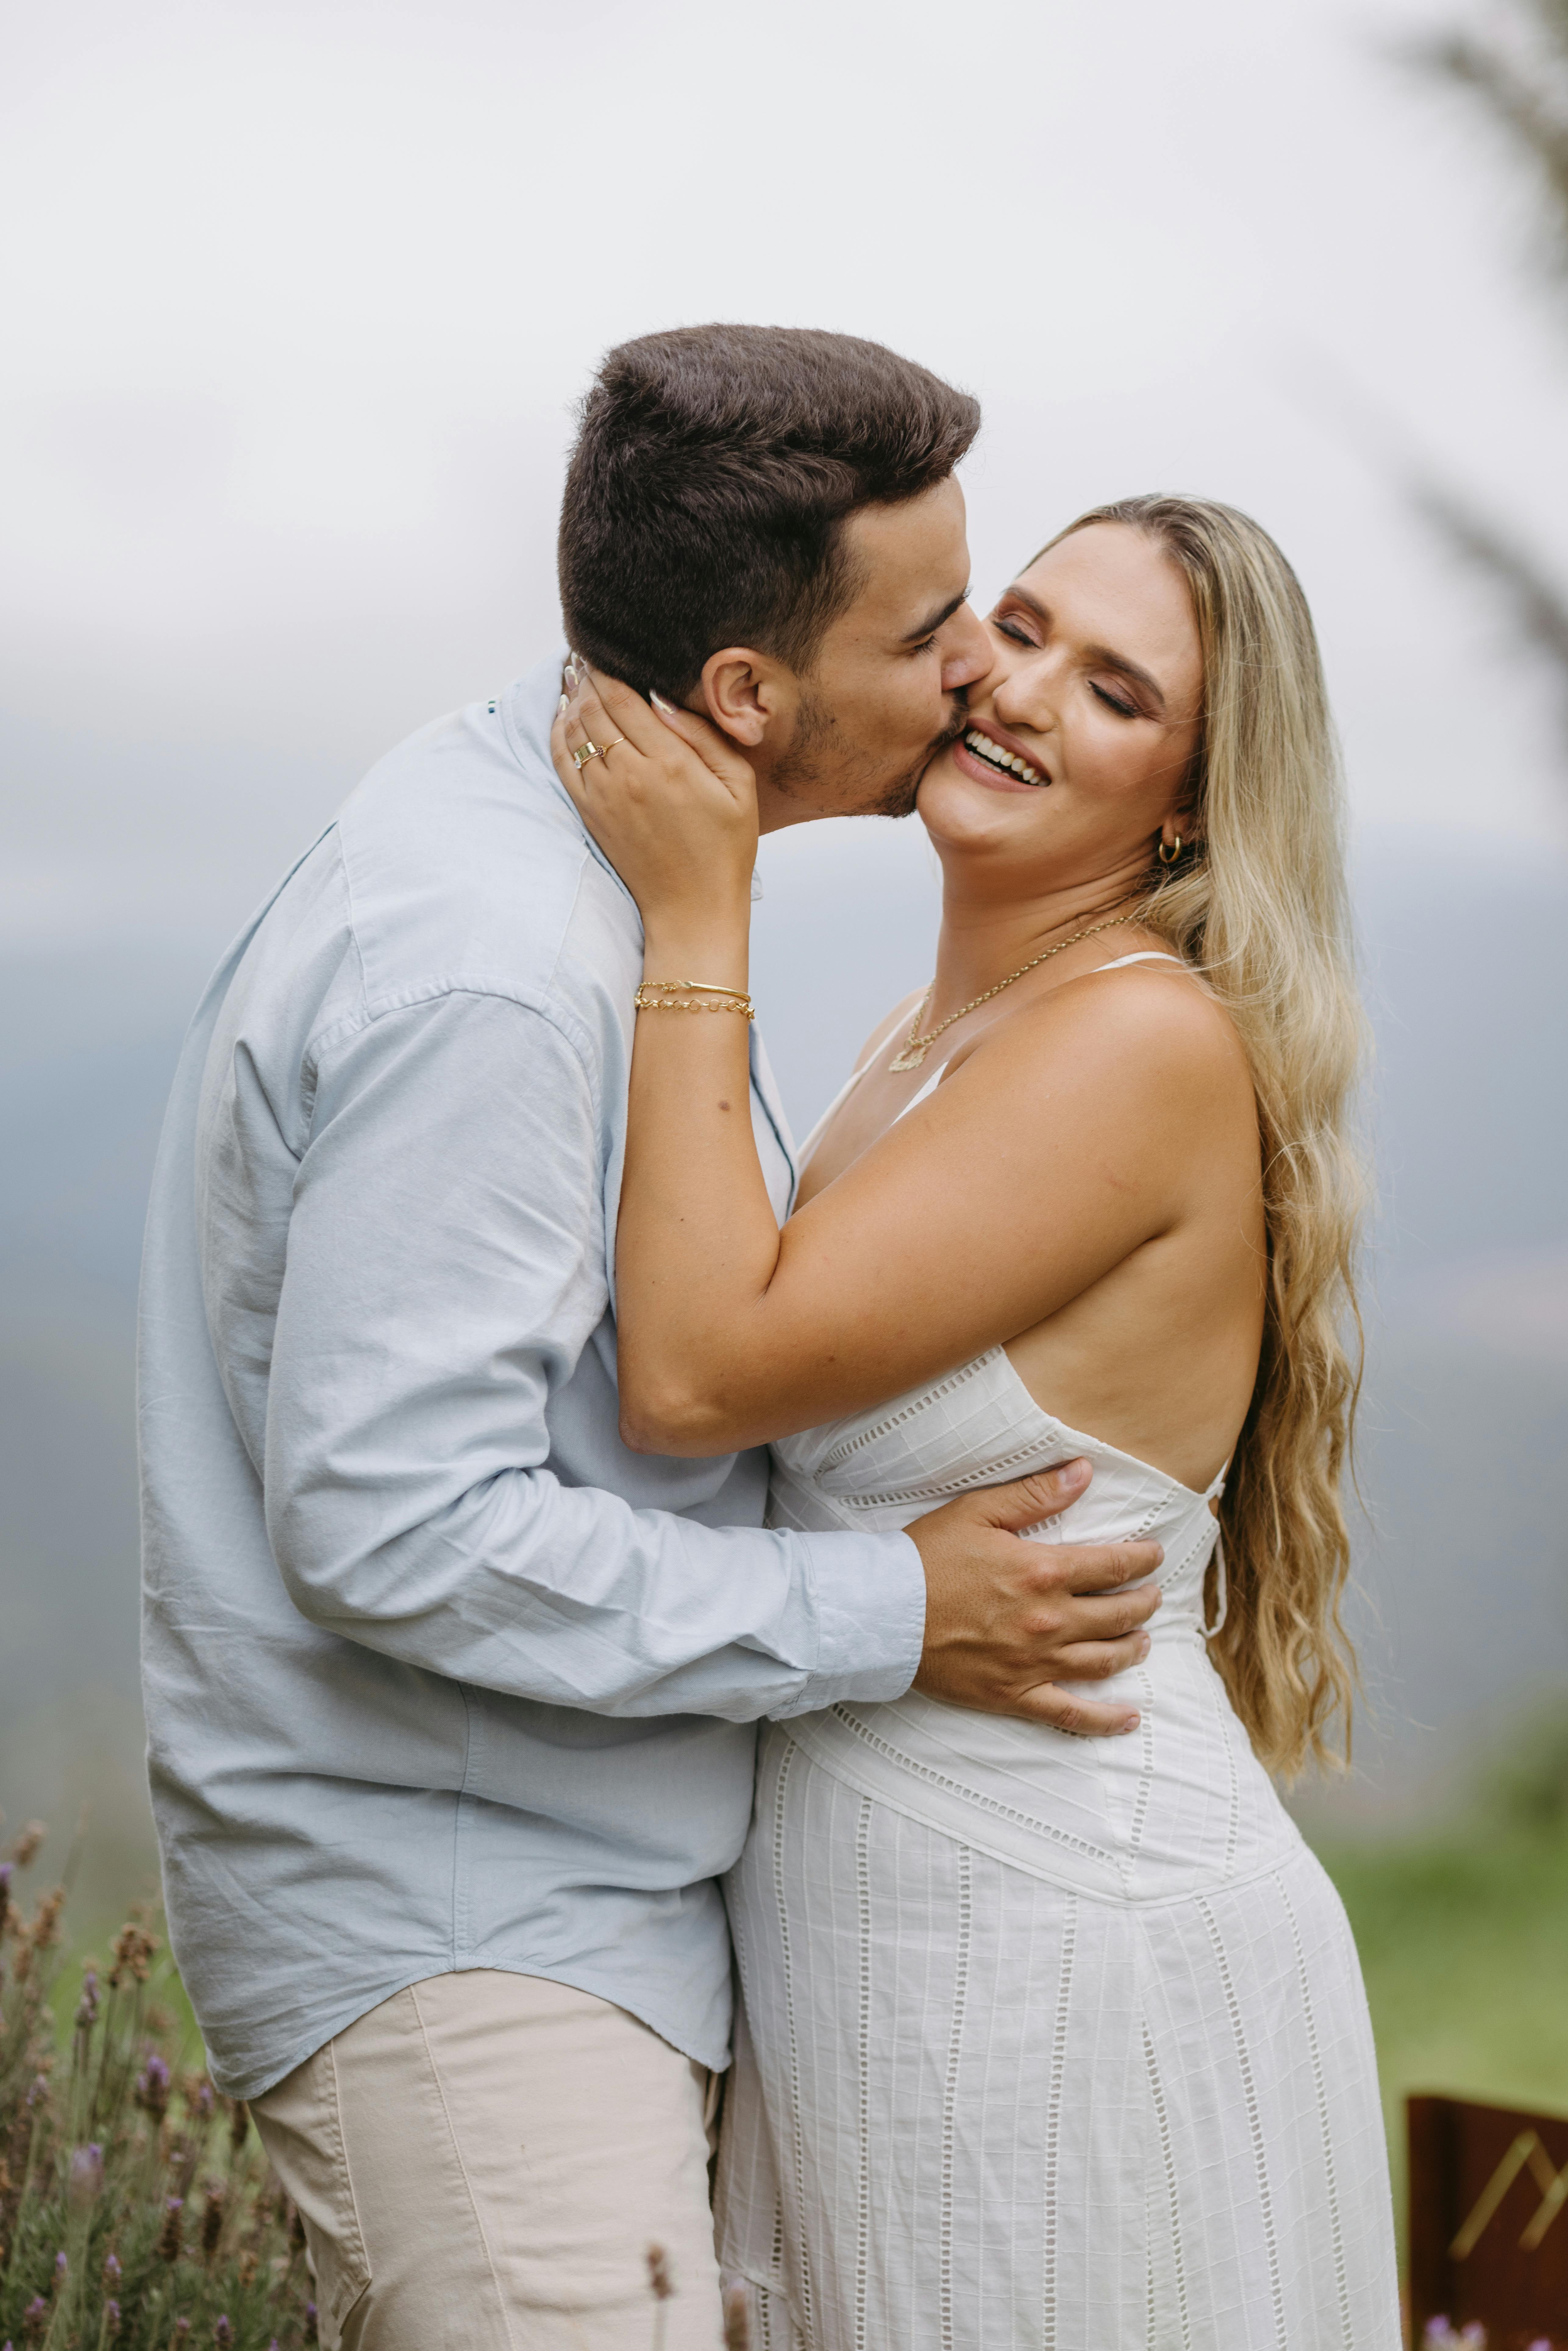 Un mari embrassant sa femme heureuse | Source : Pexels